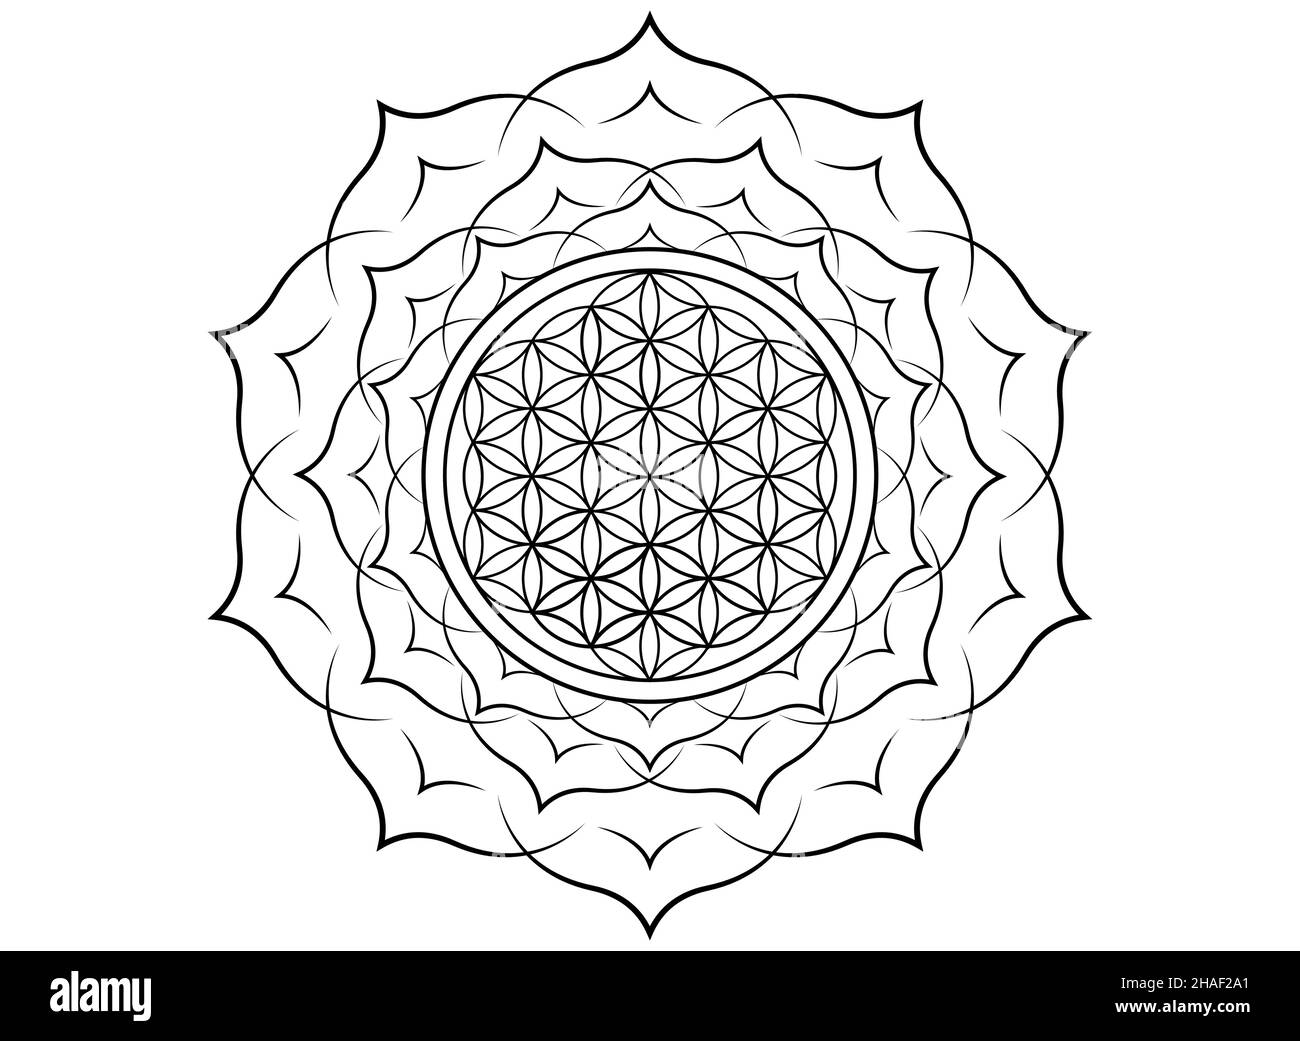 Fleur de vie, Yantra Mandala dans la fleur de lotus, géométrie sacrée.Tatouage imprimé noir symbole d'harmonie et d'équilibre.Talisman mystique, isolé Illustration de Vecteur